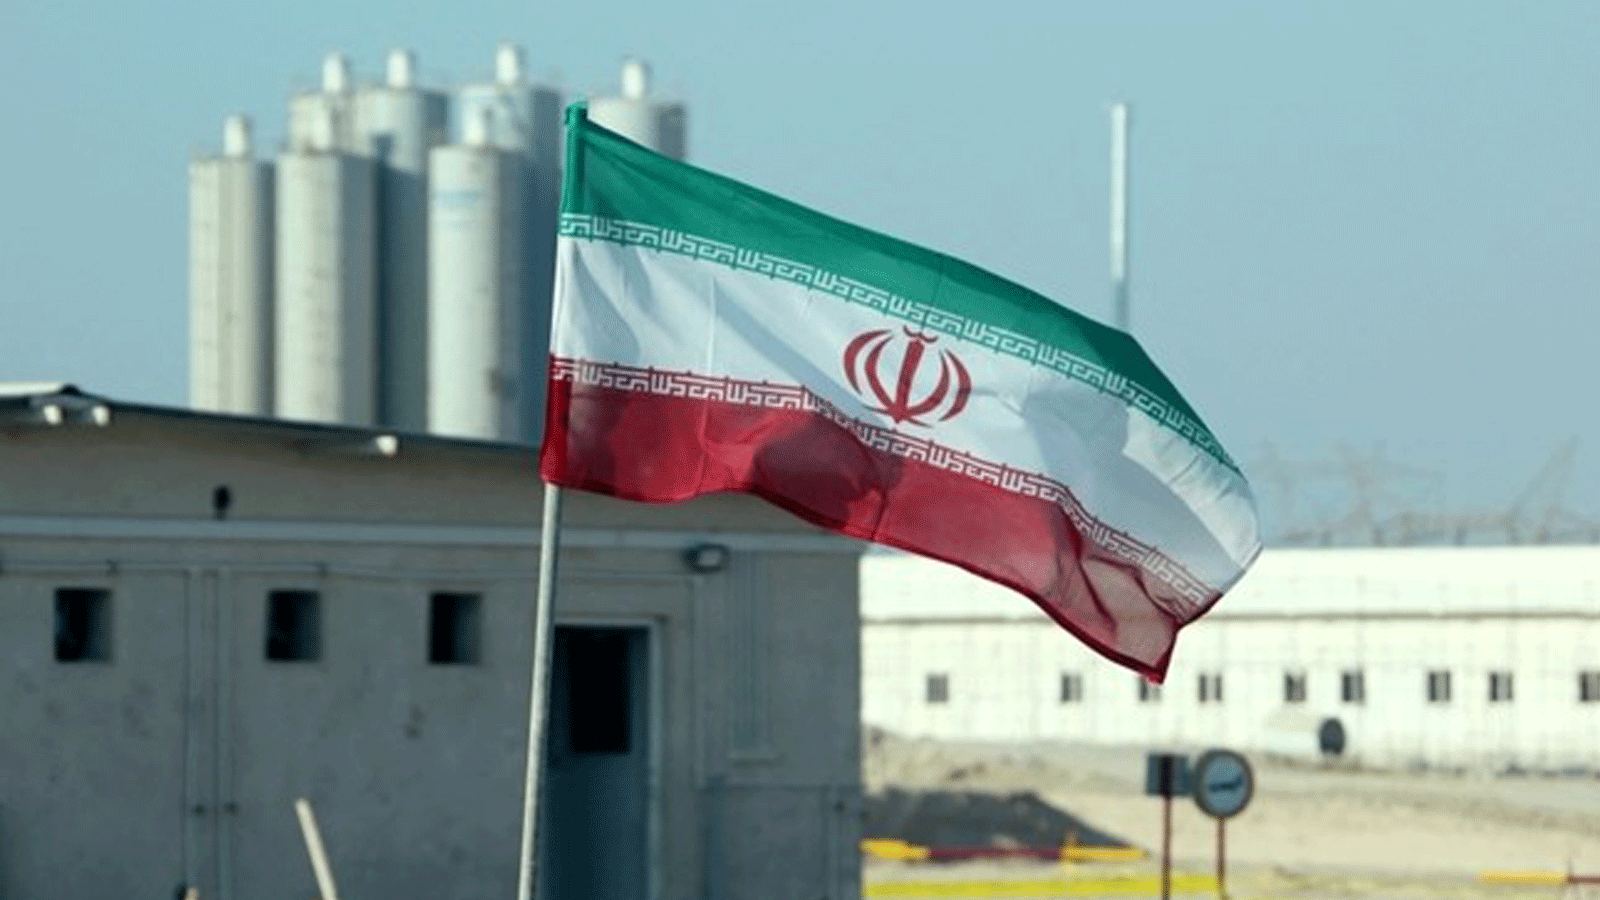 صورة التُقِطت في 10 تشرين الثاني/ نوفمبر 2019، تُظهر العلم الإيراني في محطة بوشهر للطاقة النووية، خلال حفلٍ رسمي لبدء الأعمال في مفاعل ثانٍ في المنشأة.